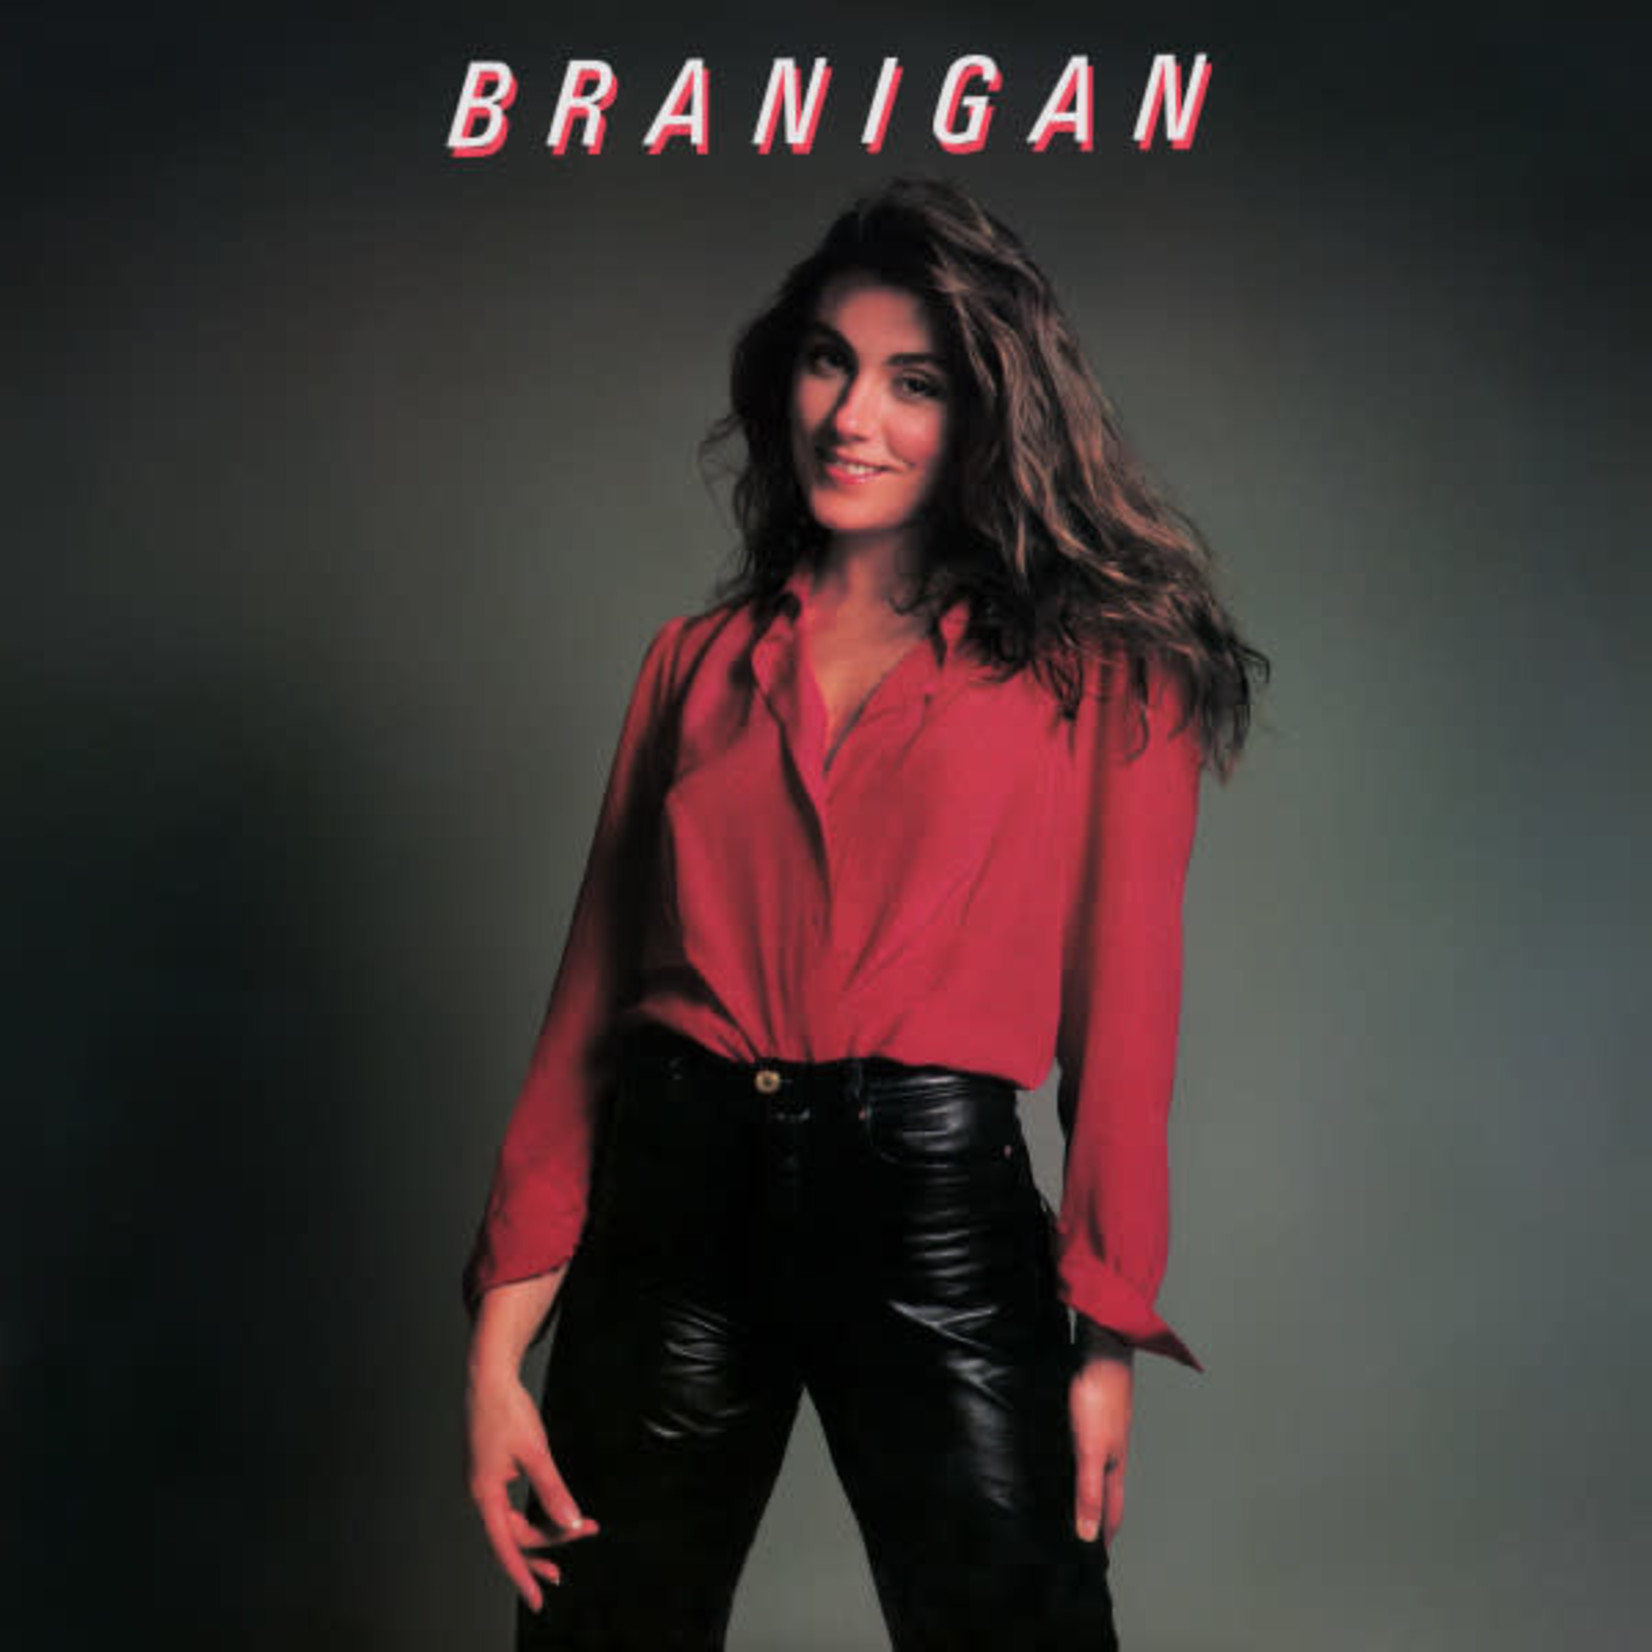 [Vintage] Laura Branigan - Branigan